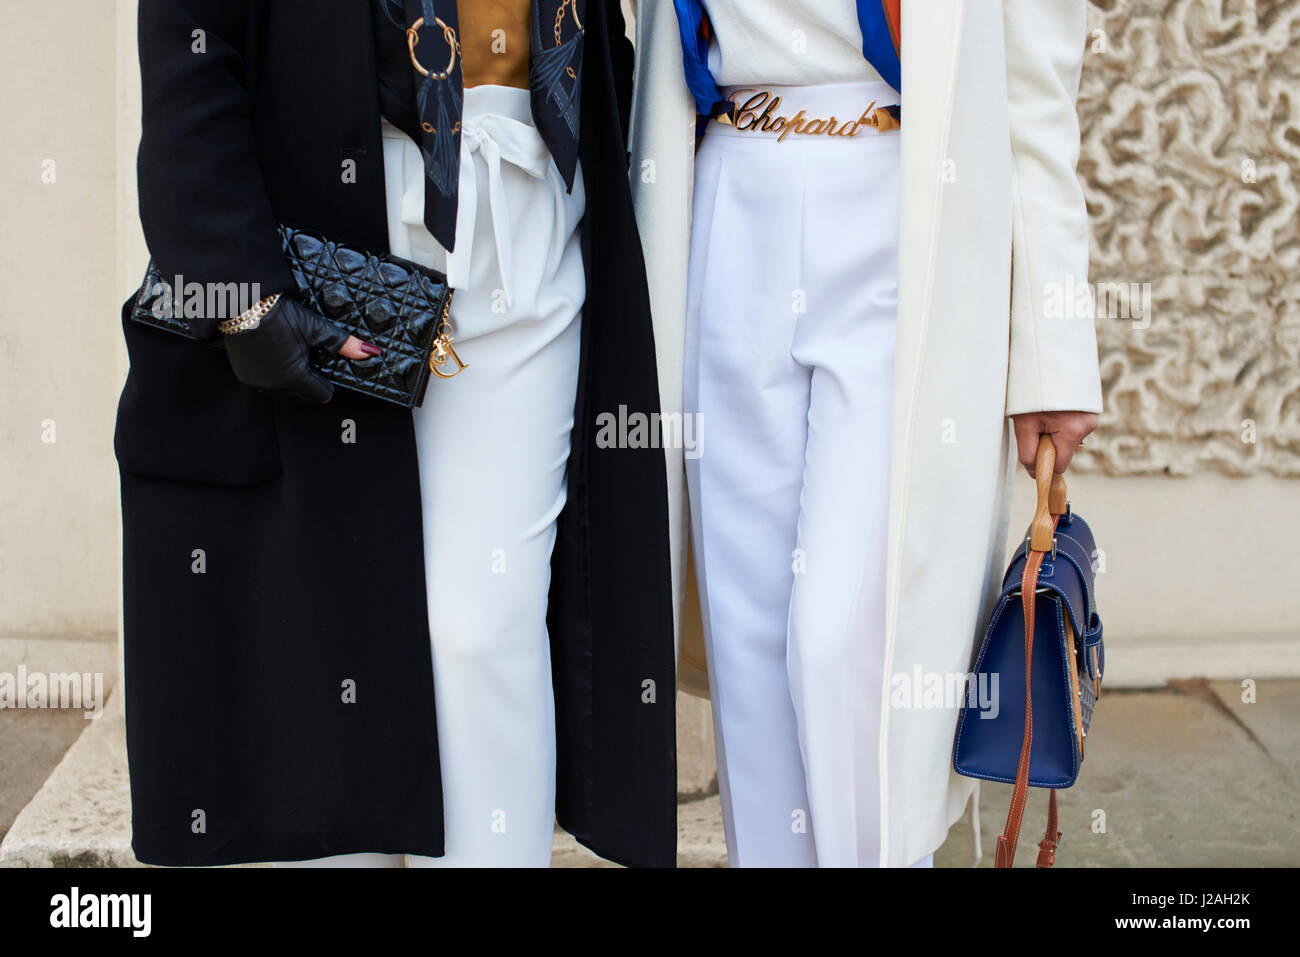 LONDON - Februar 2017: Unterteil Mitte zweier Frauen auf der Straße halten Handtaschen Chanel Clutch-Tasche auf der linken Seite, während die Frau auf der rechten Seite trägt einen Gürtel Chopard während der London Fashion Week, horizontale, Vorderansicht Stockfoto